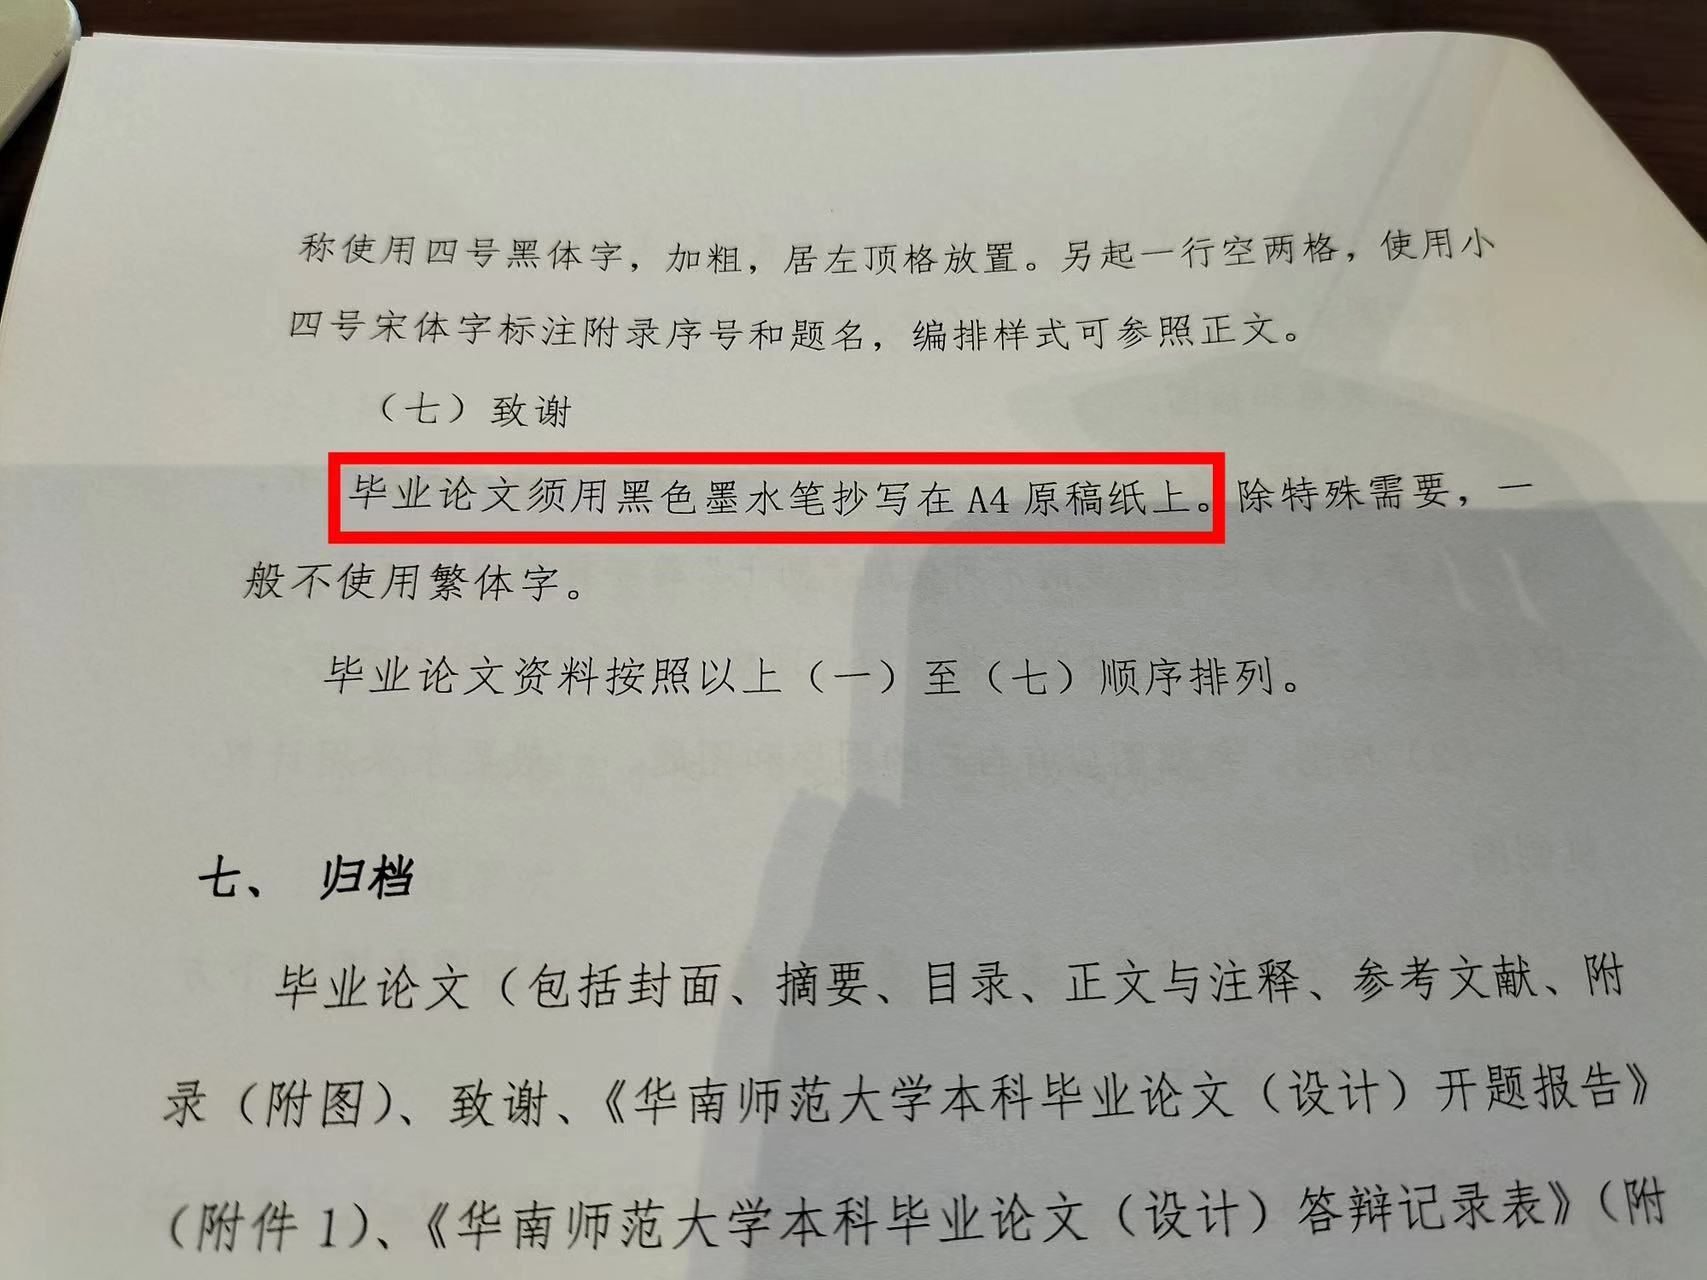 华南师大文学院要求手抄毕业论文引不满 院方称考核书写能力